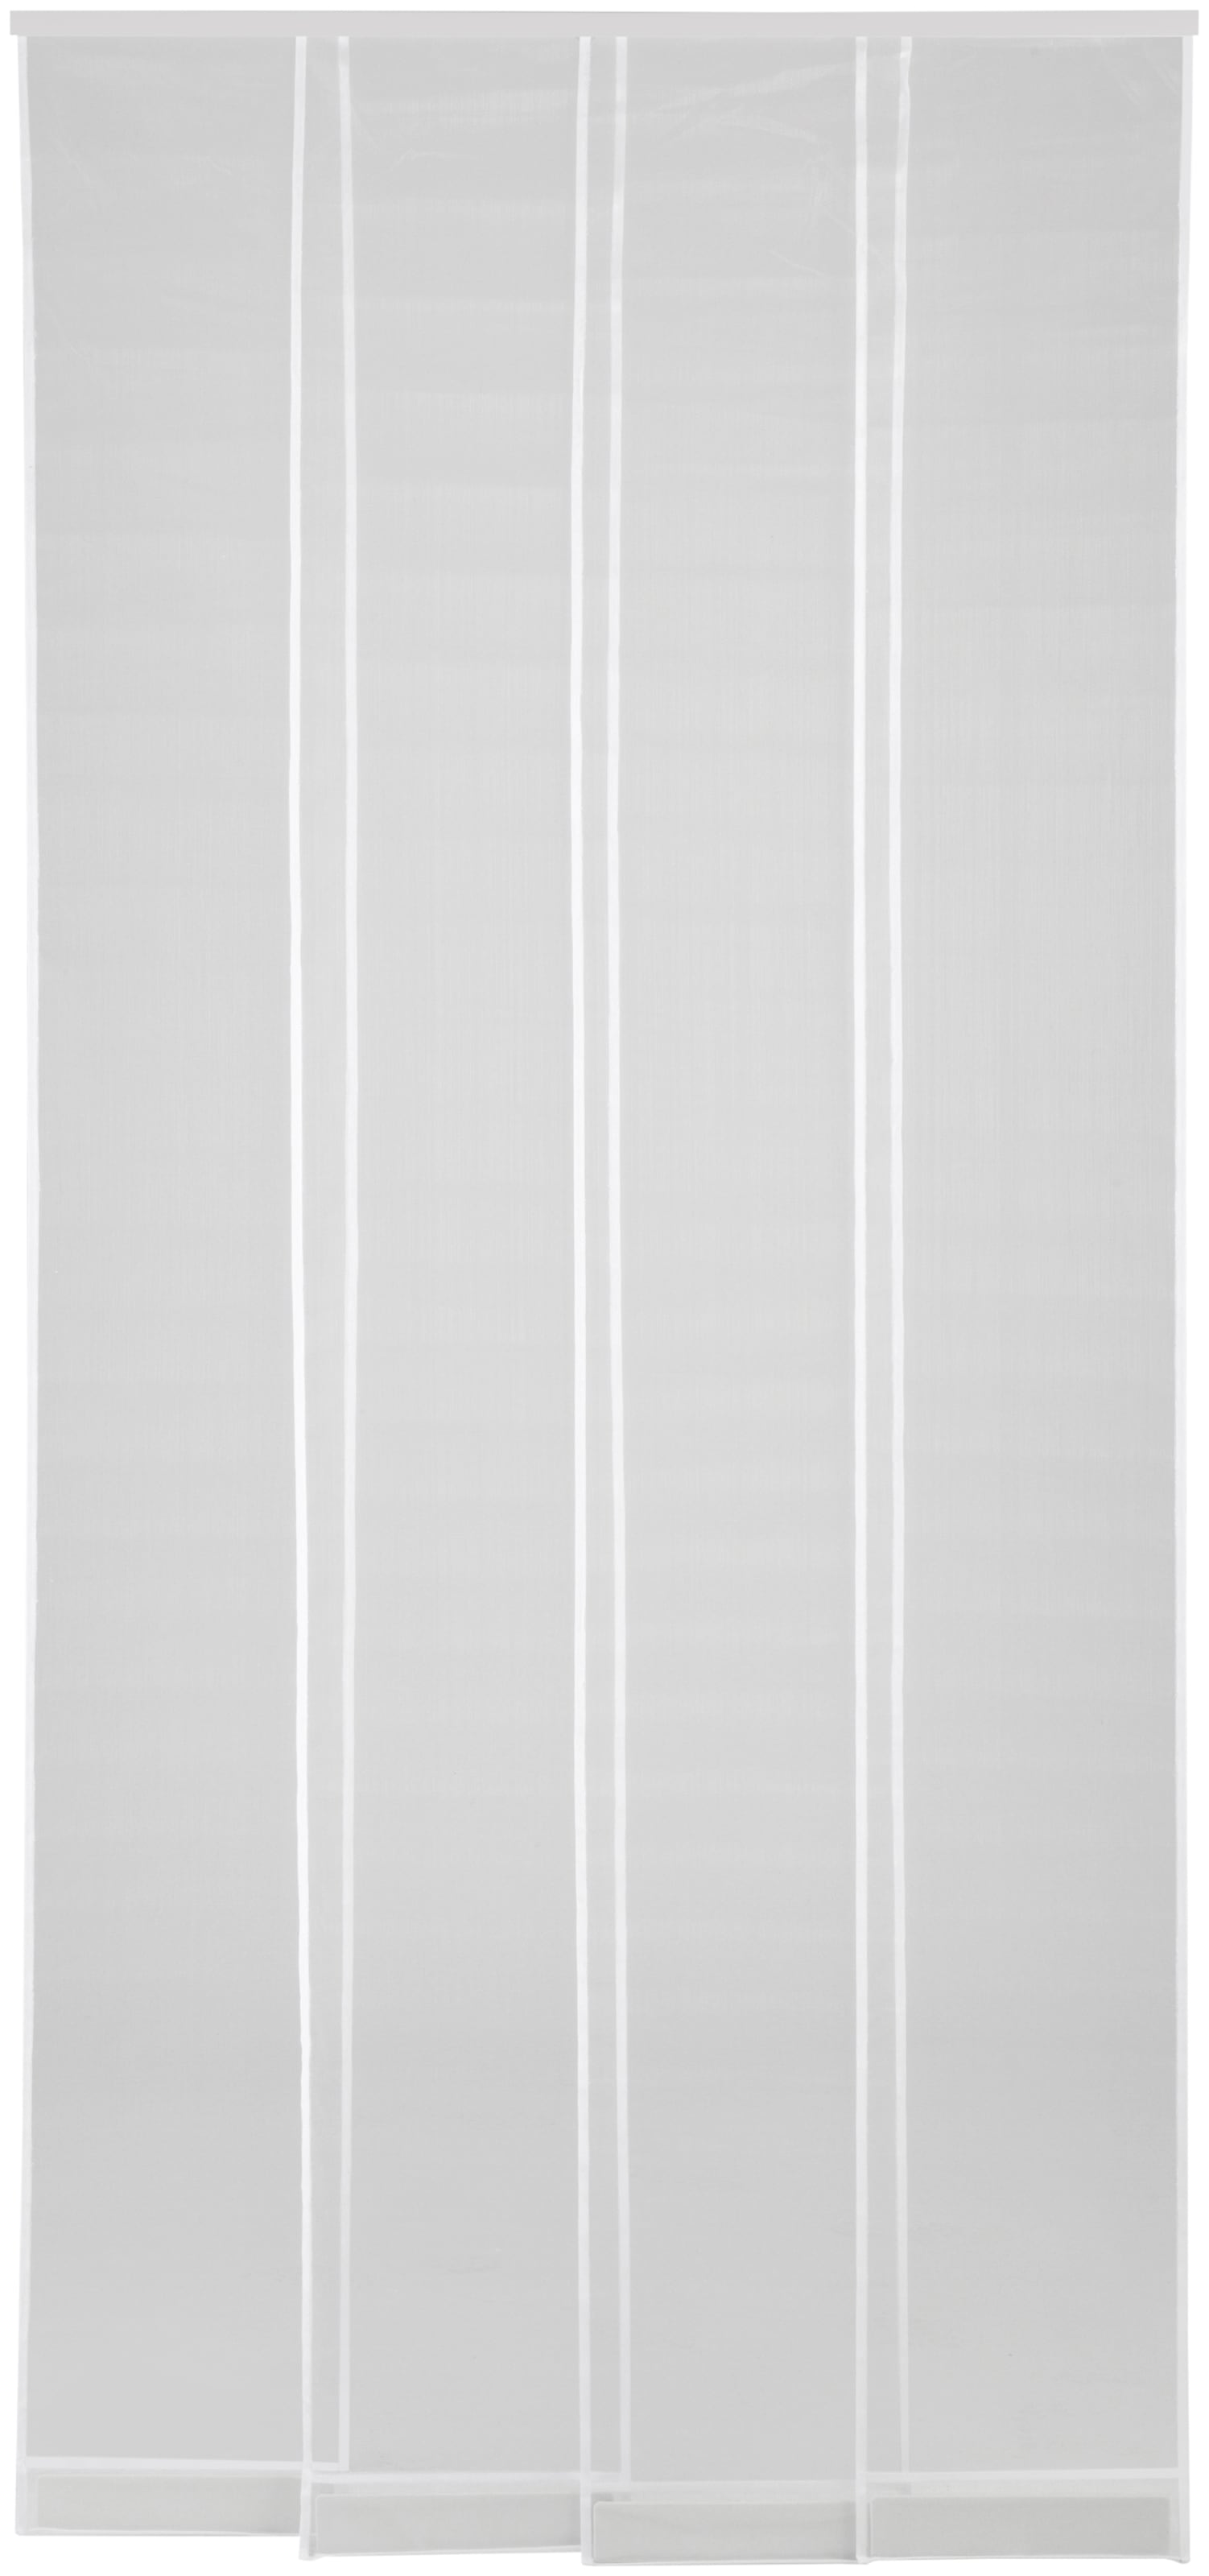 hecht international Insektenschutz-Vorhang "FILATEC", weiß, BxH: 100x220 cm